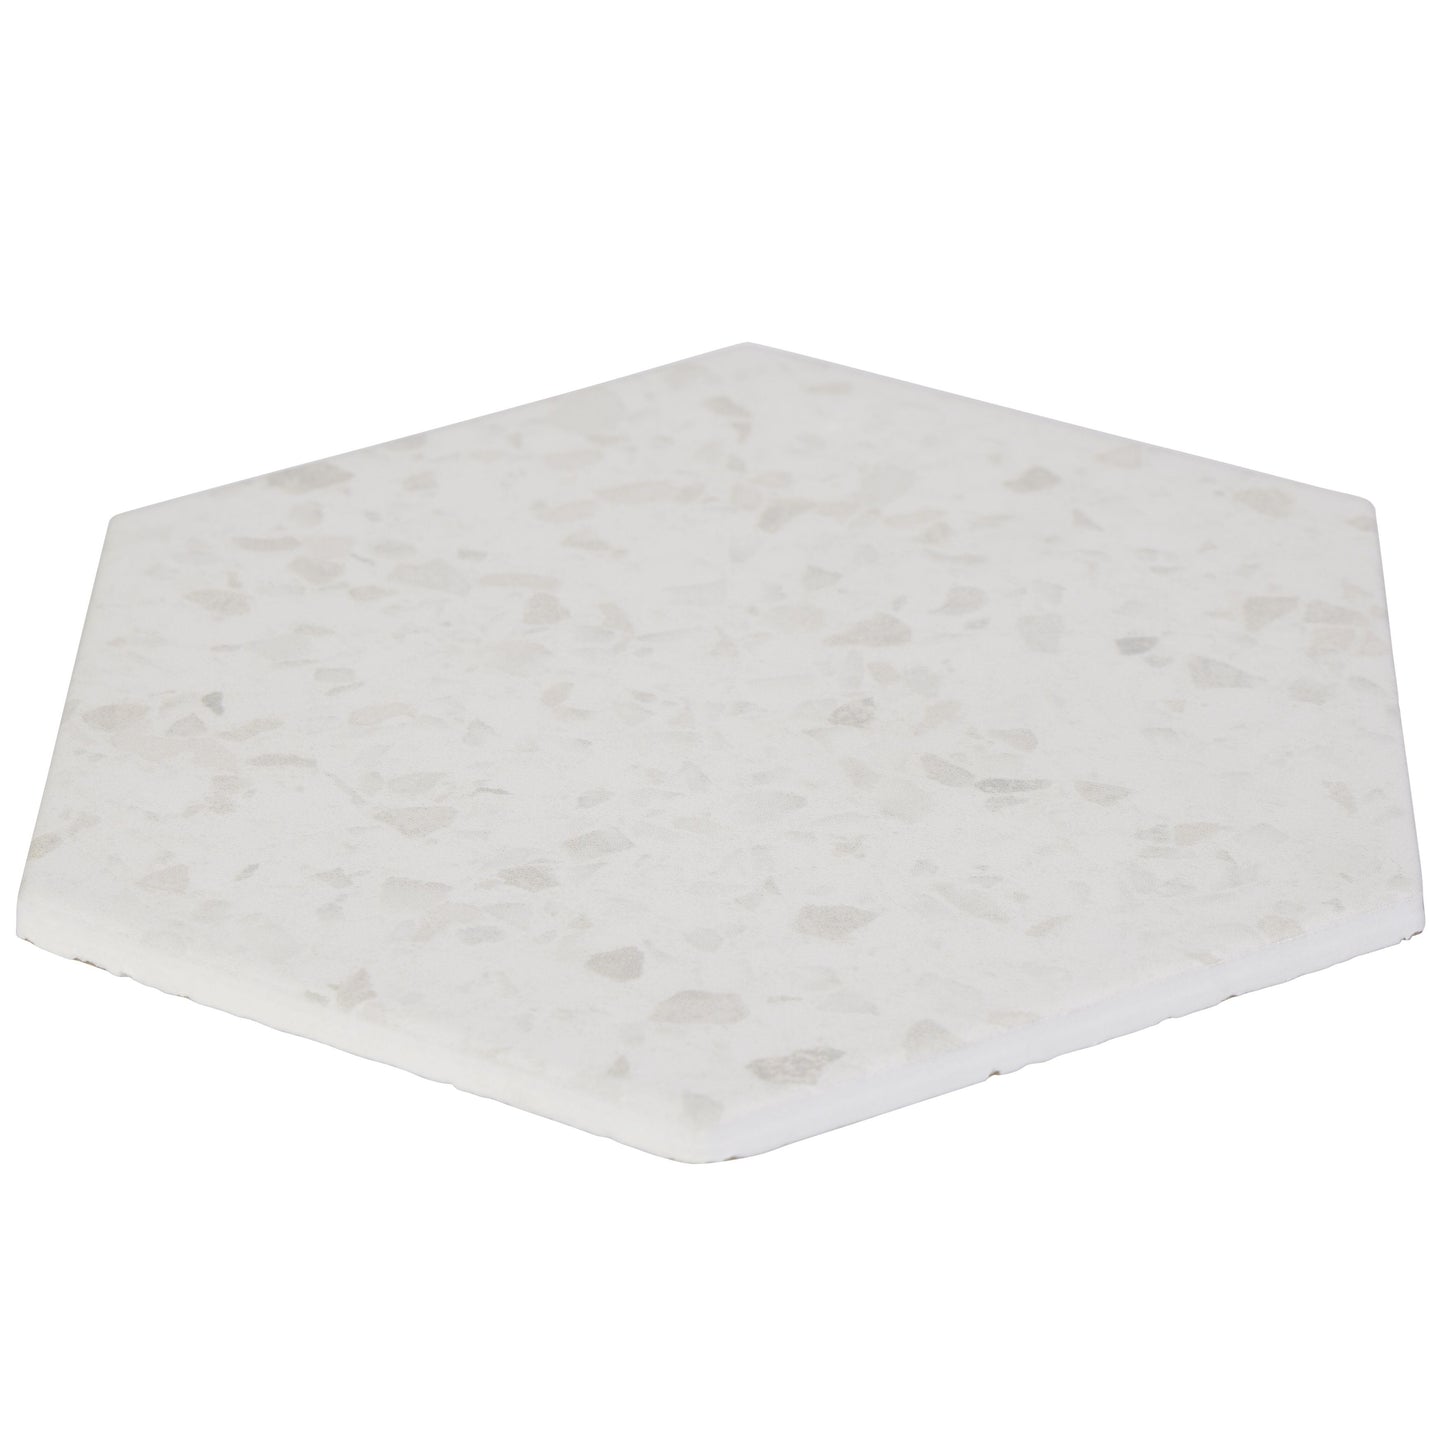 8x10 Hexagon Spark White porcelain tile - Industry Tile